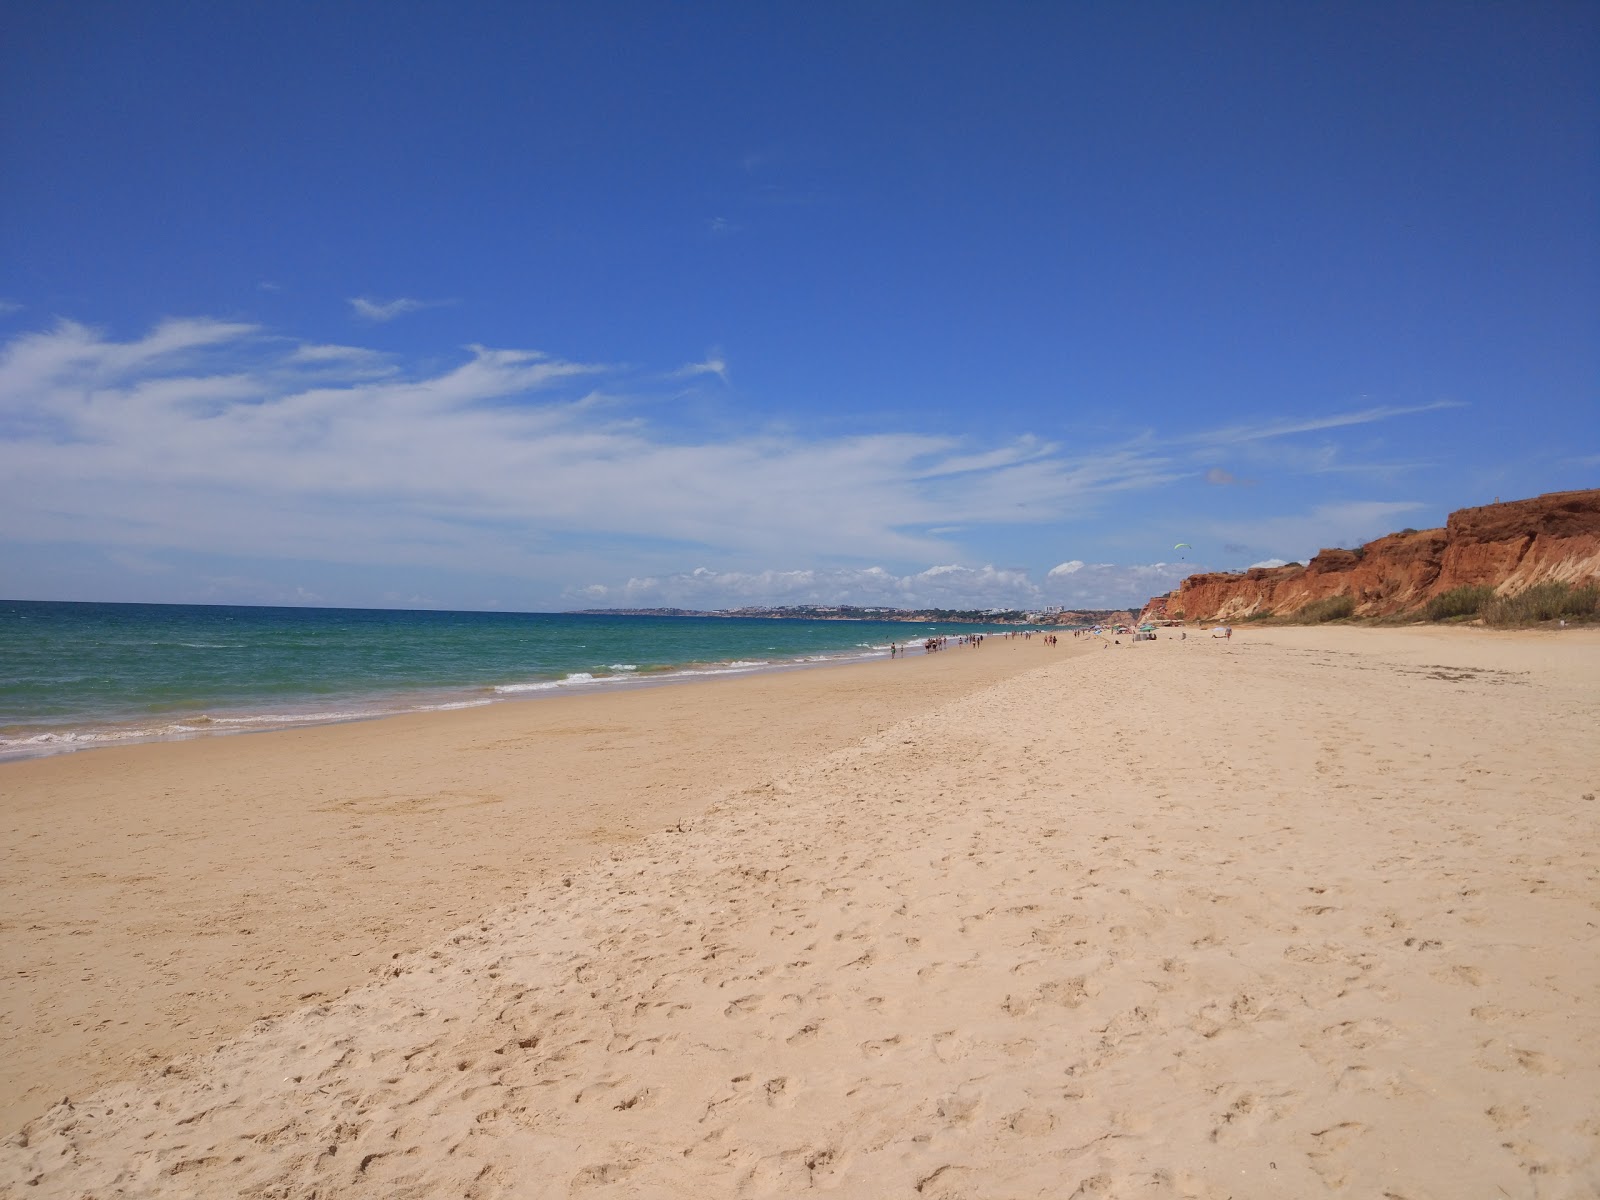 Domates Plajı'in fotoğrafı i̇nce kahverengi kum yüzey ile